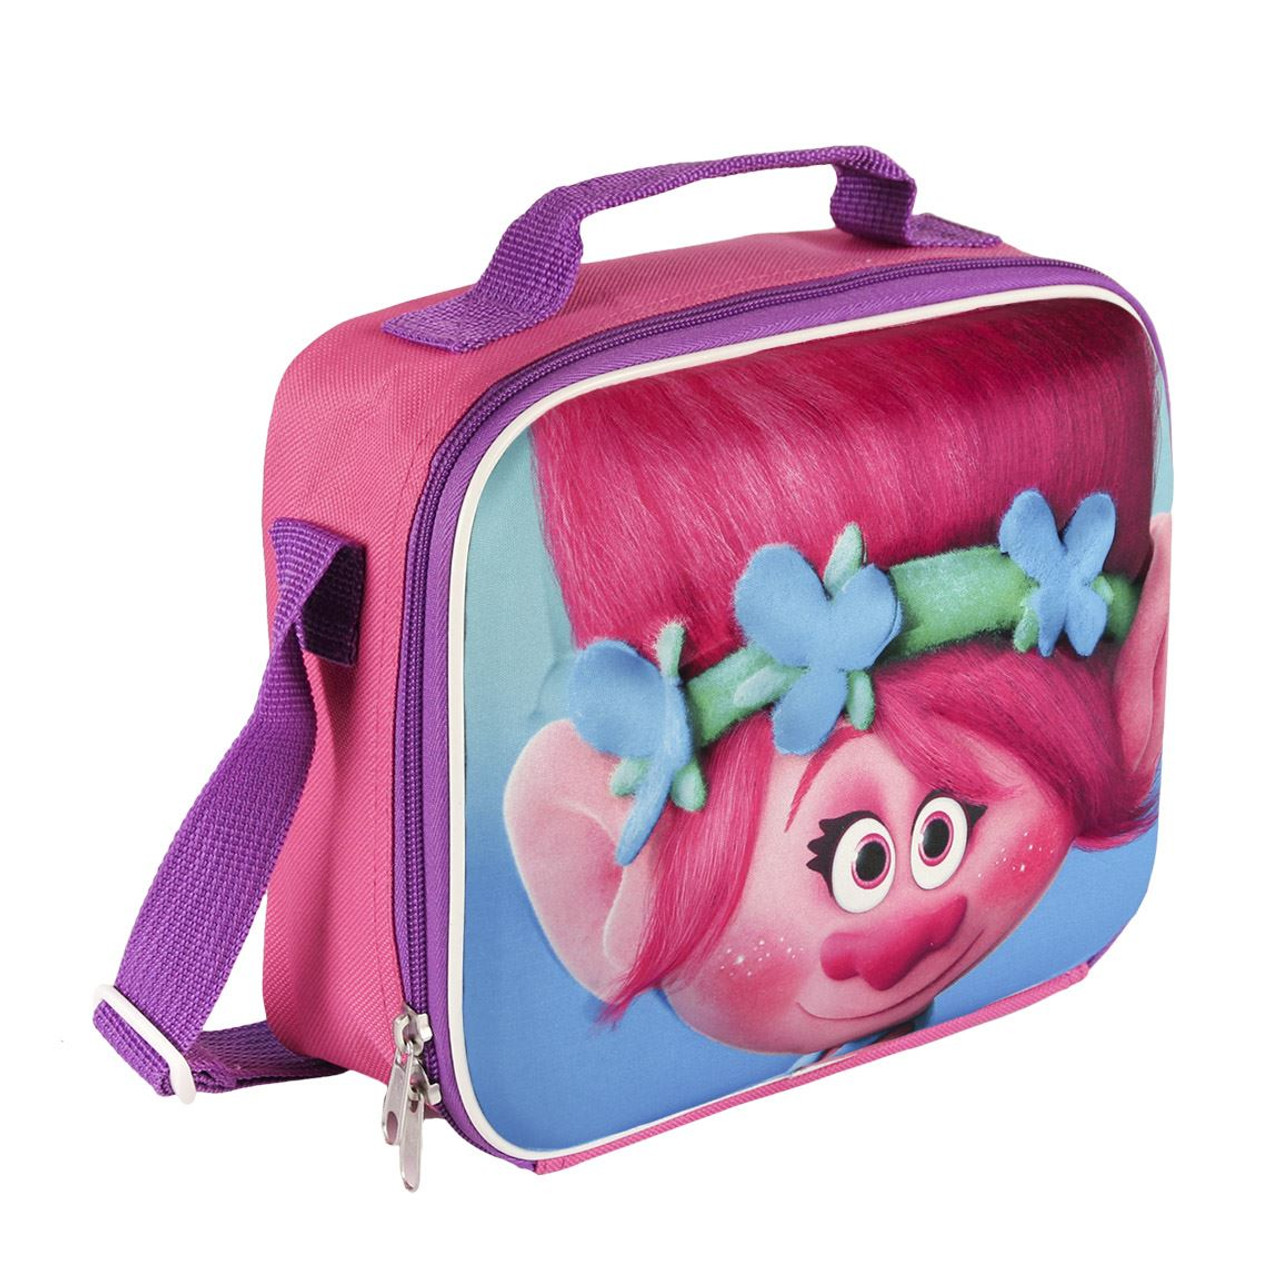 DreamWorks Trolls Poppy Dance Hug Sing Insulated Lunch Bag Lunchbox 